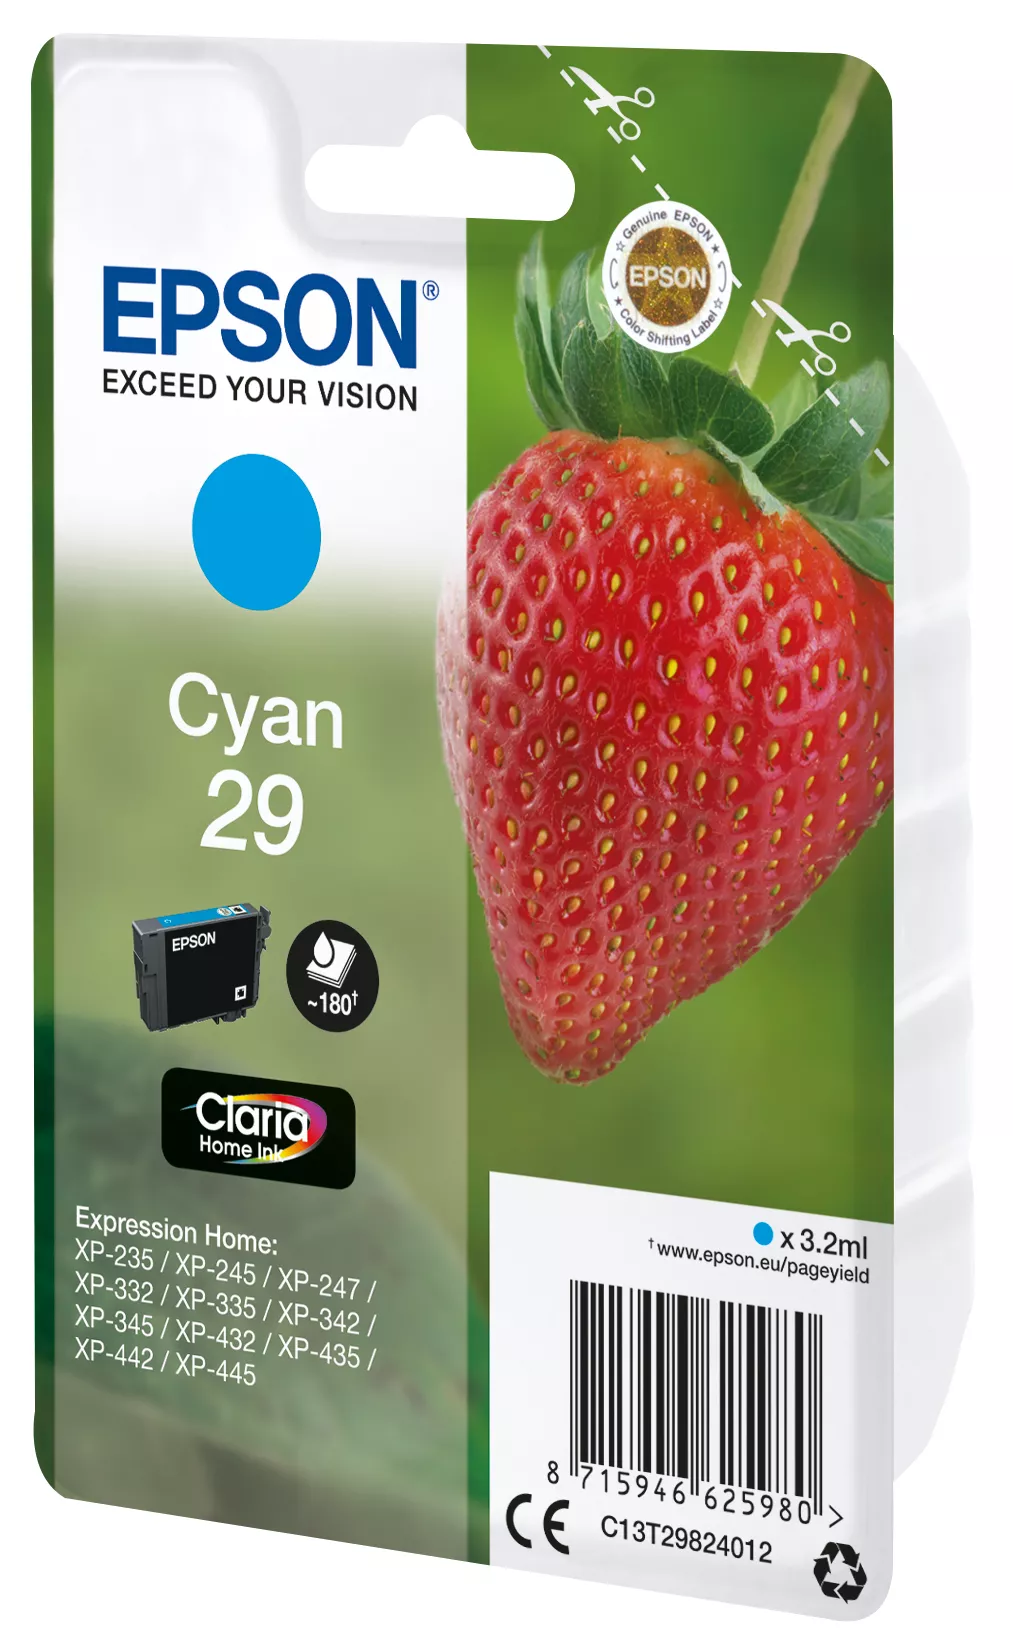 Vente EPSON Cartouche Fraise Encre Claria Home Cyan Epson au meilleur prix - visuel 2